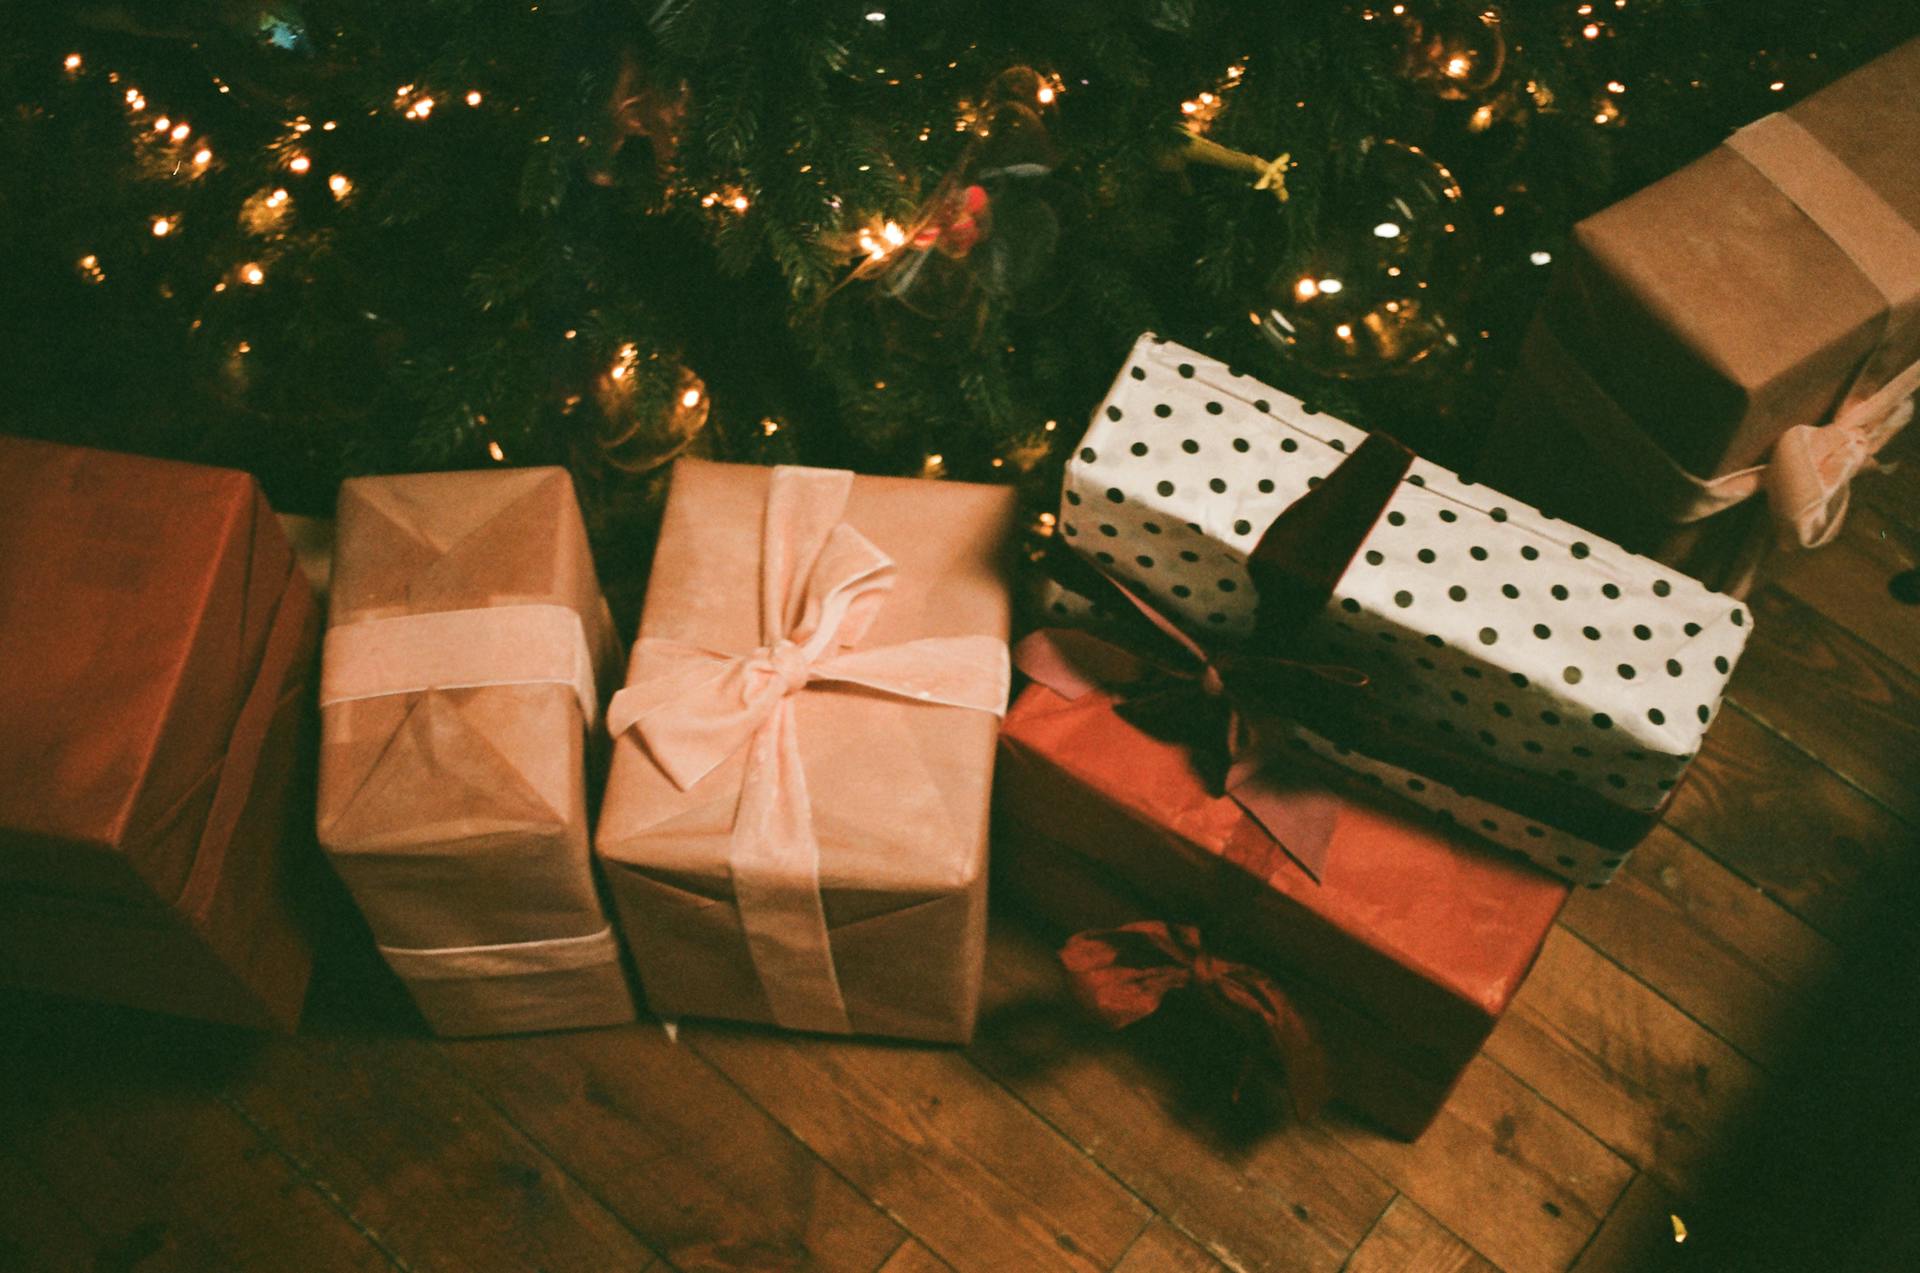 Boîtes de cadeaux posés sur le sol près d'un arbre de Noël | Source : Pexels